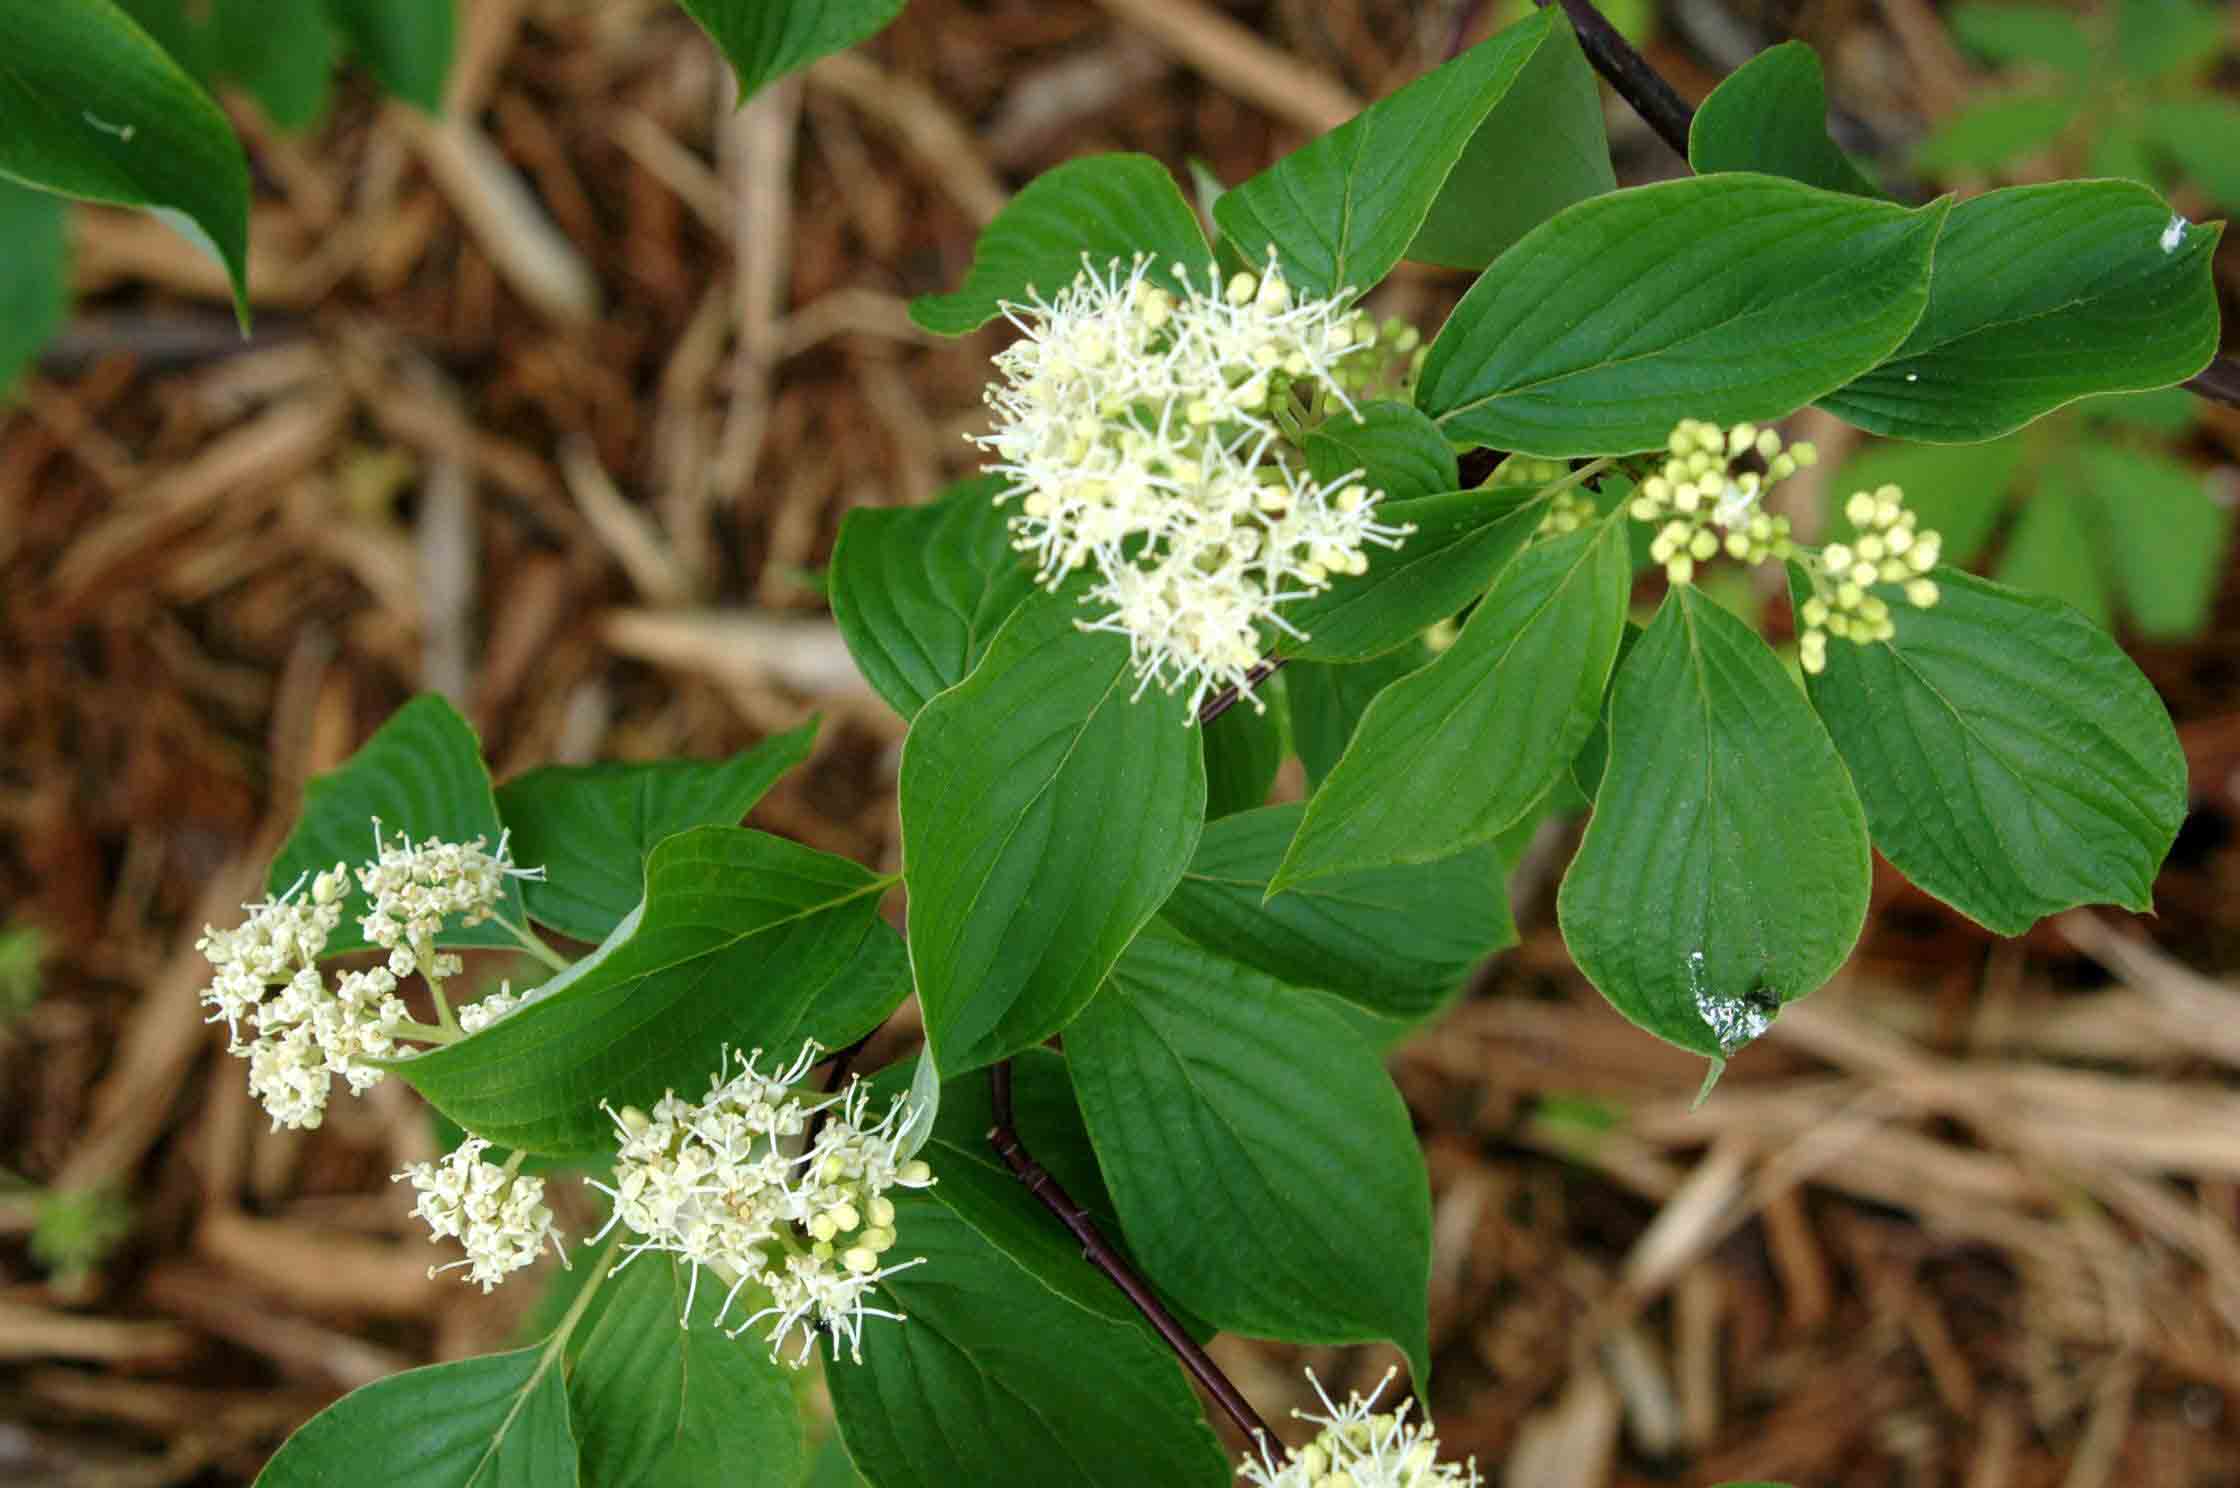 Alternate-leaf dogwood flowers